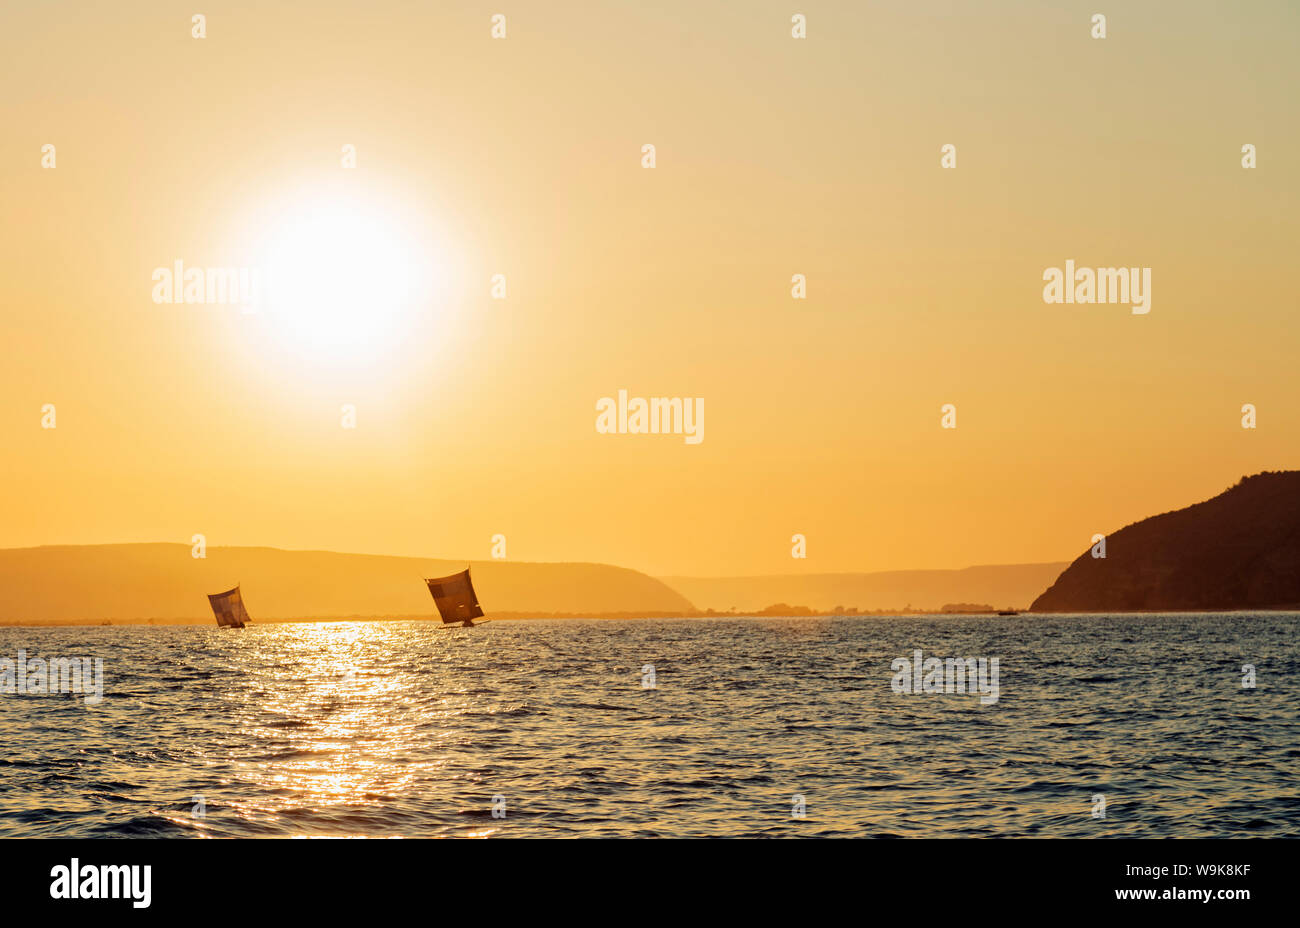 Saint Augustin, voiliers à l'horizon au lever du soleil, zone sud, Madagascar, Afrique Banque D'Images